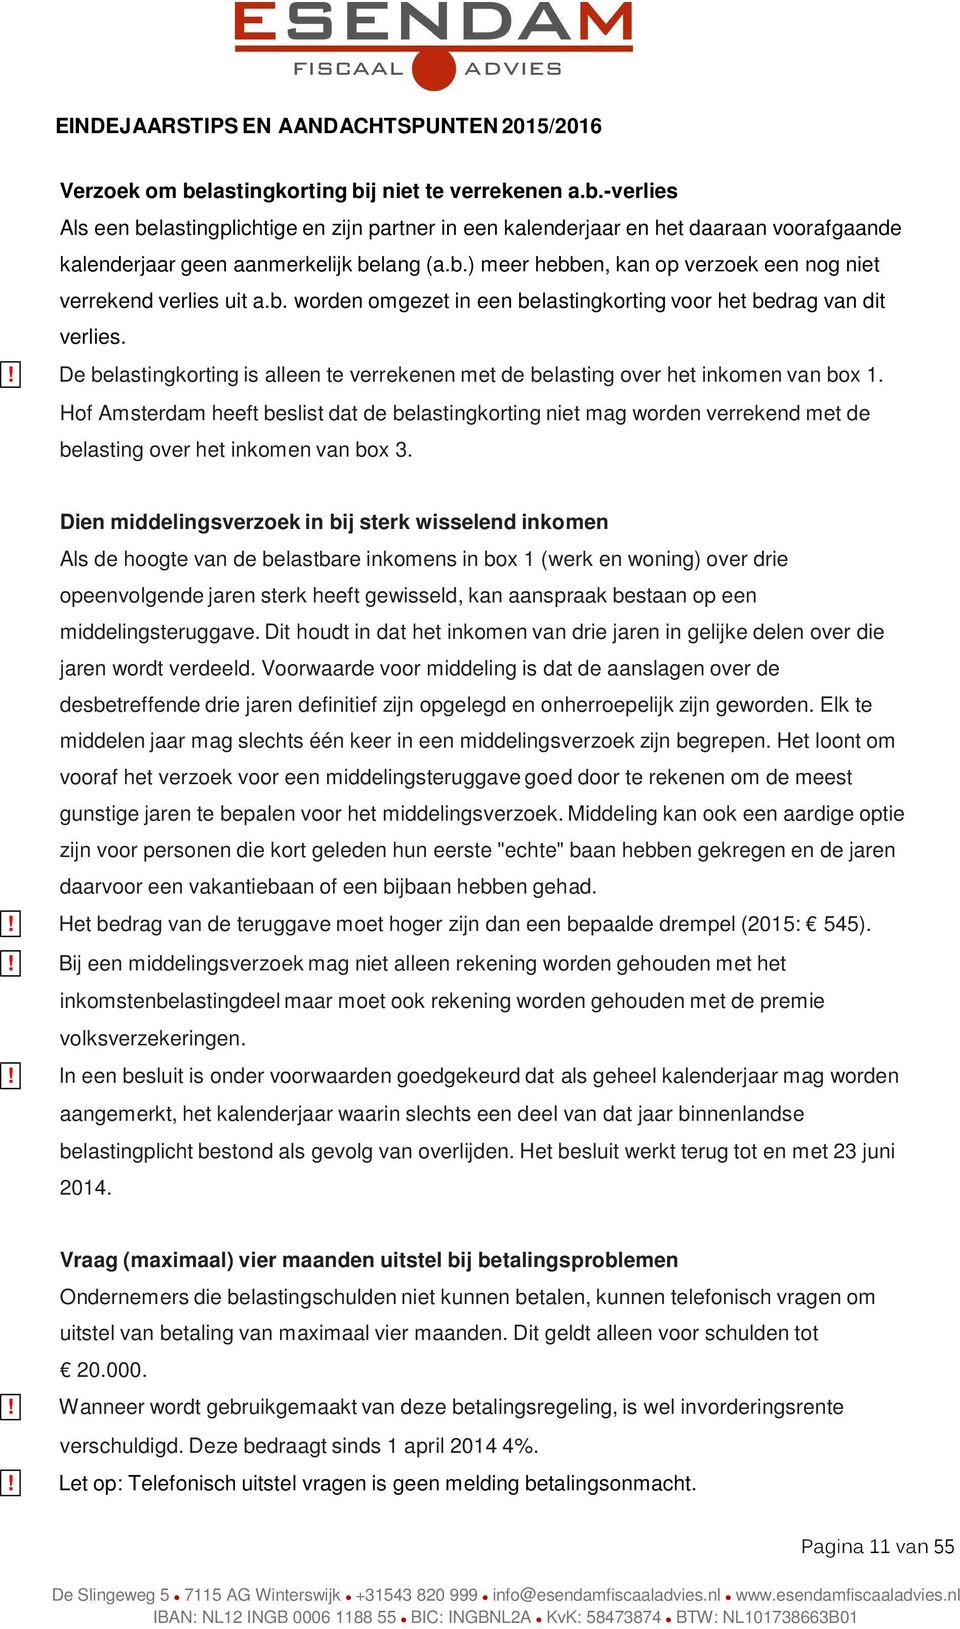 Hof Amsterdam heeft beslist dat de belastingkorting niet mag worden verrekend met de belasting over het inkomen van box 3.